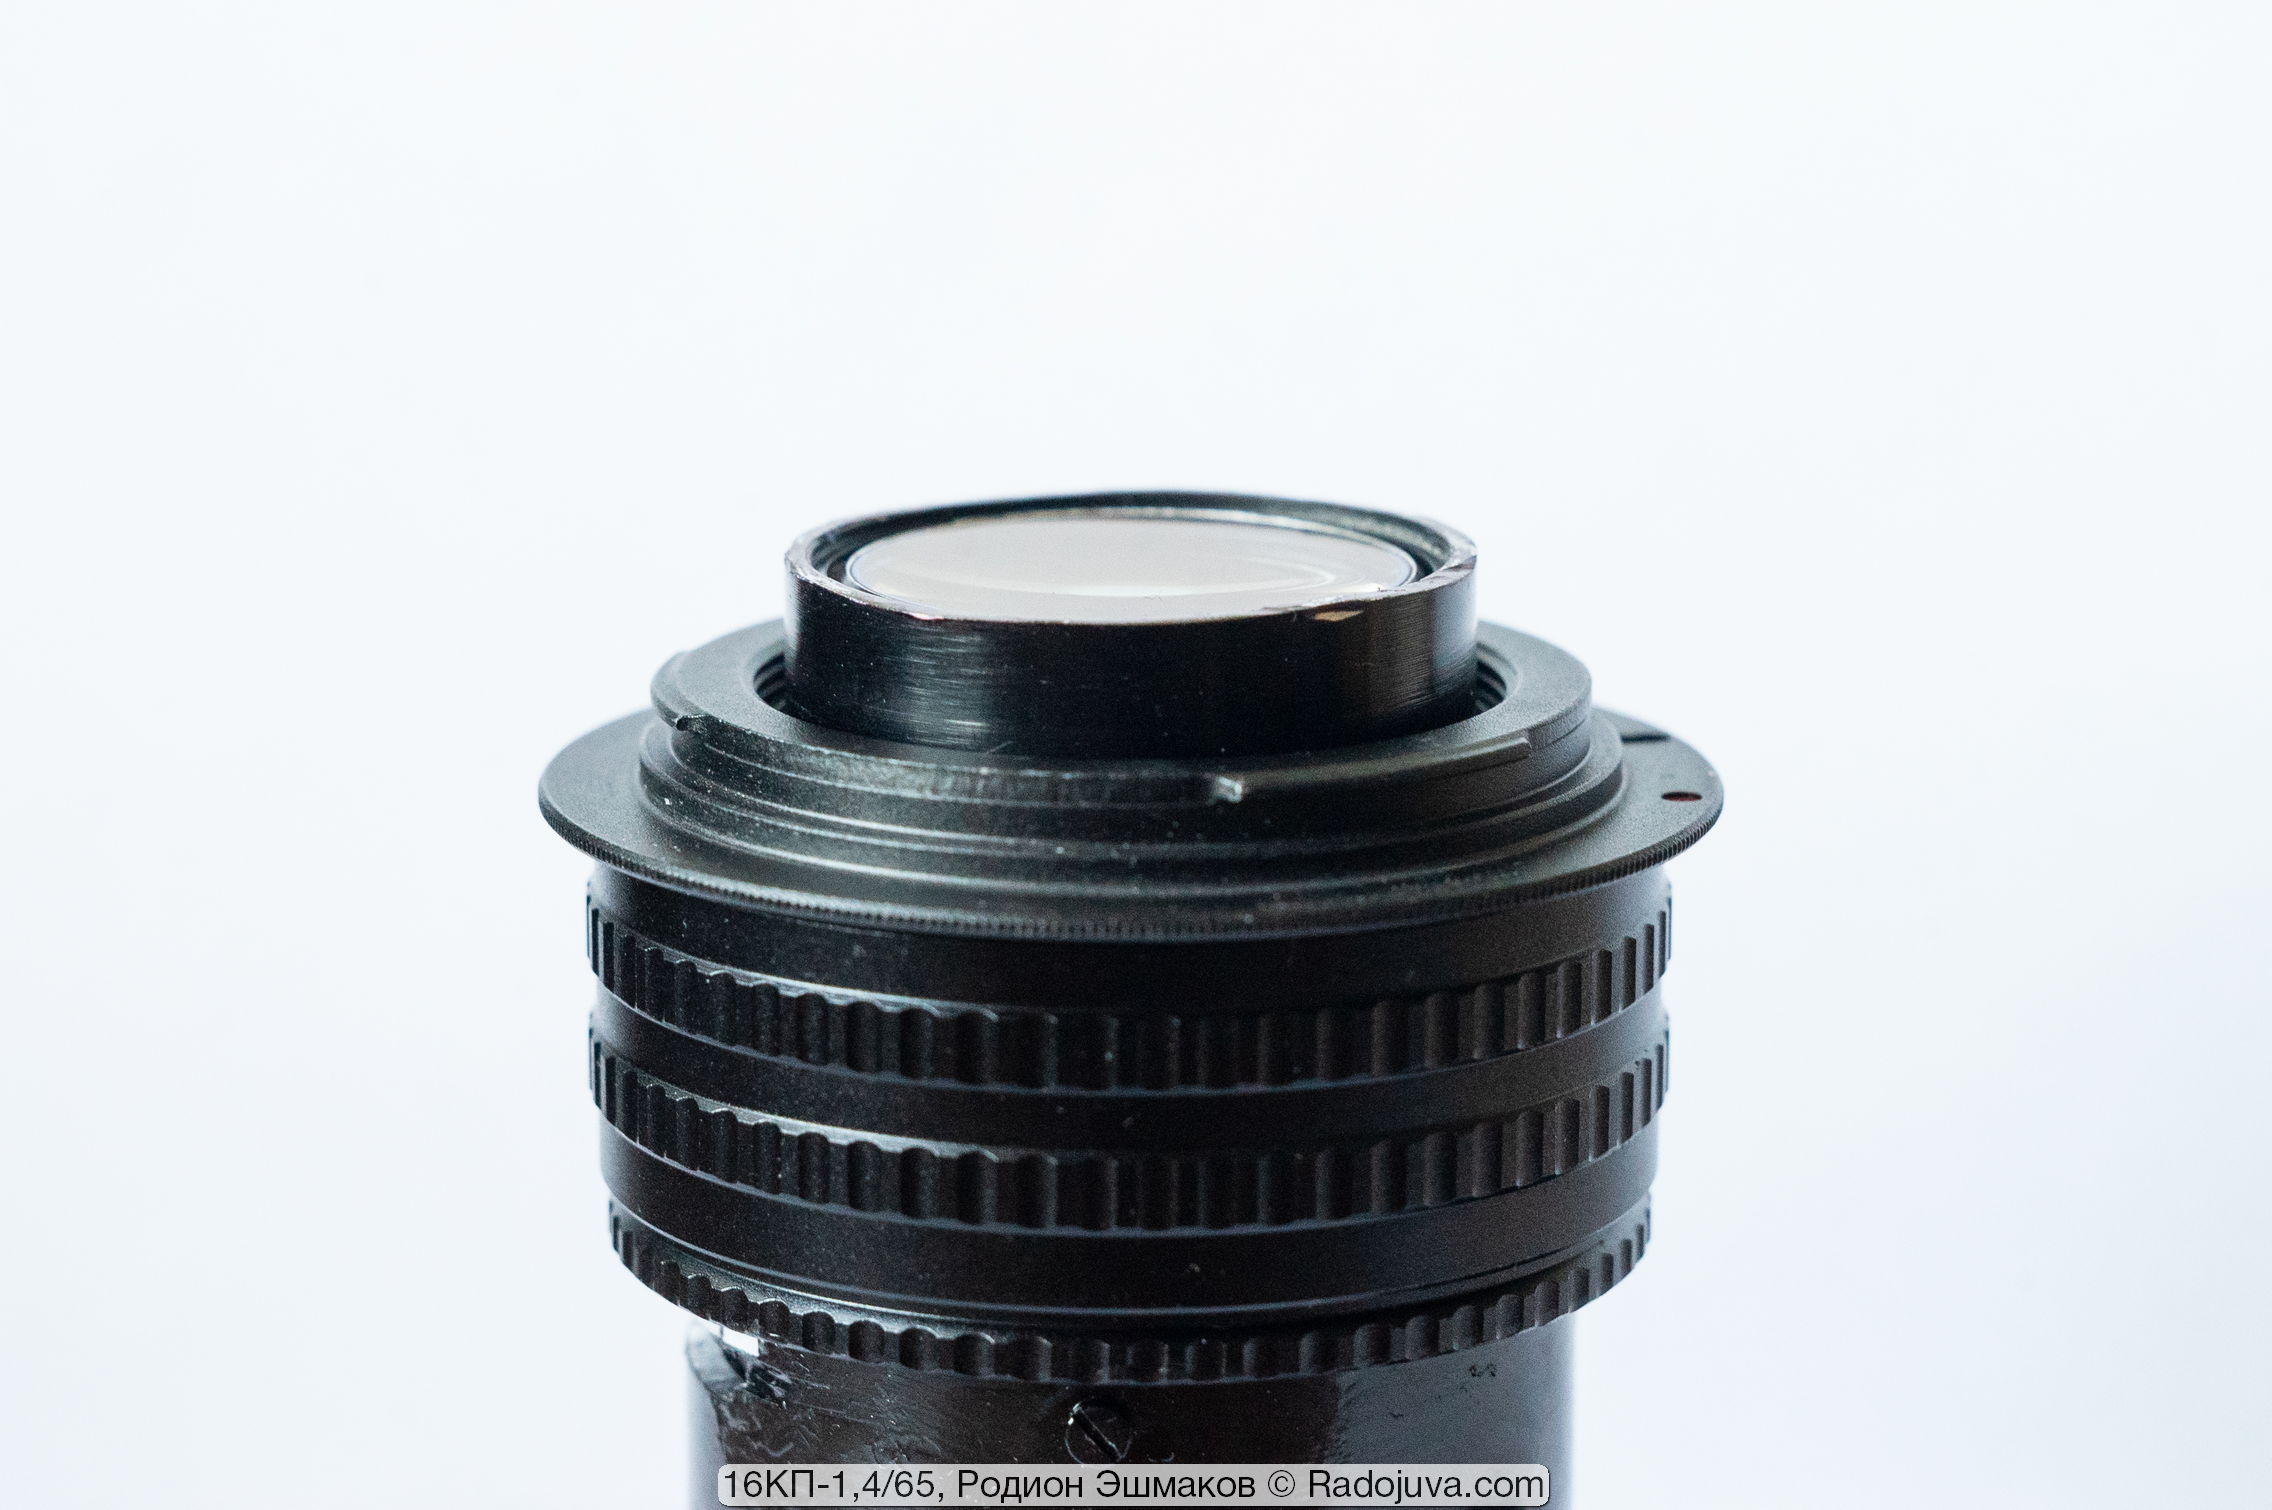 El bloque de la lente sobresale mucho más allá del plano del adaptador M42-EOS atornillado a la lente.